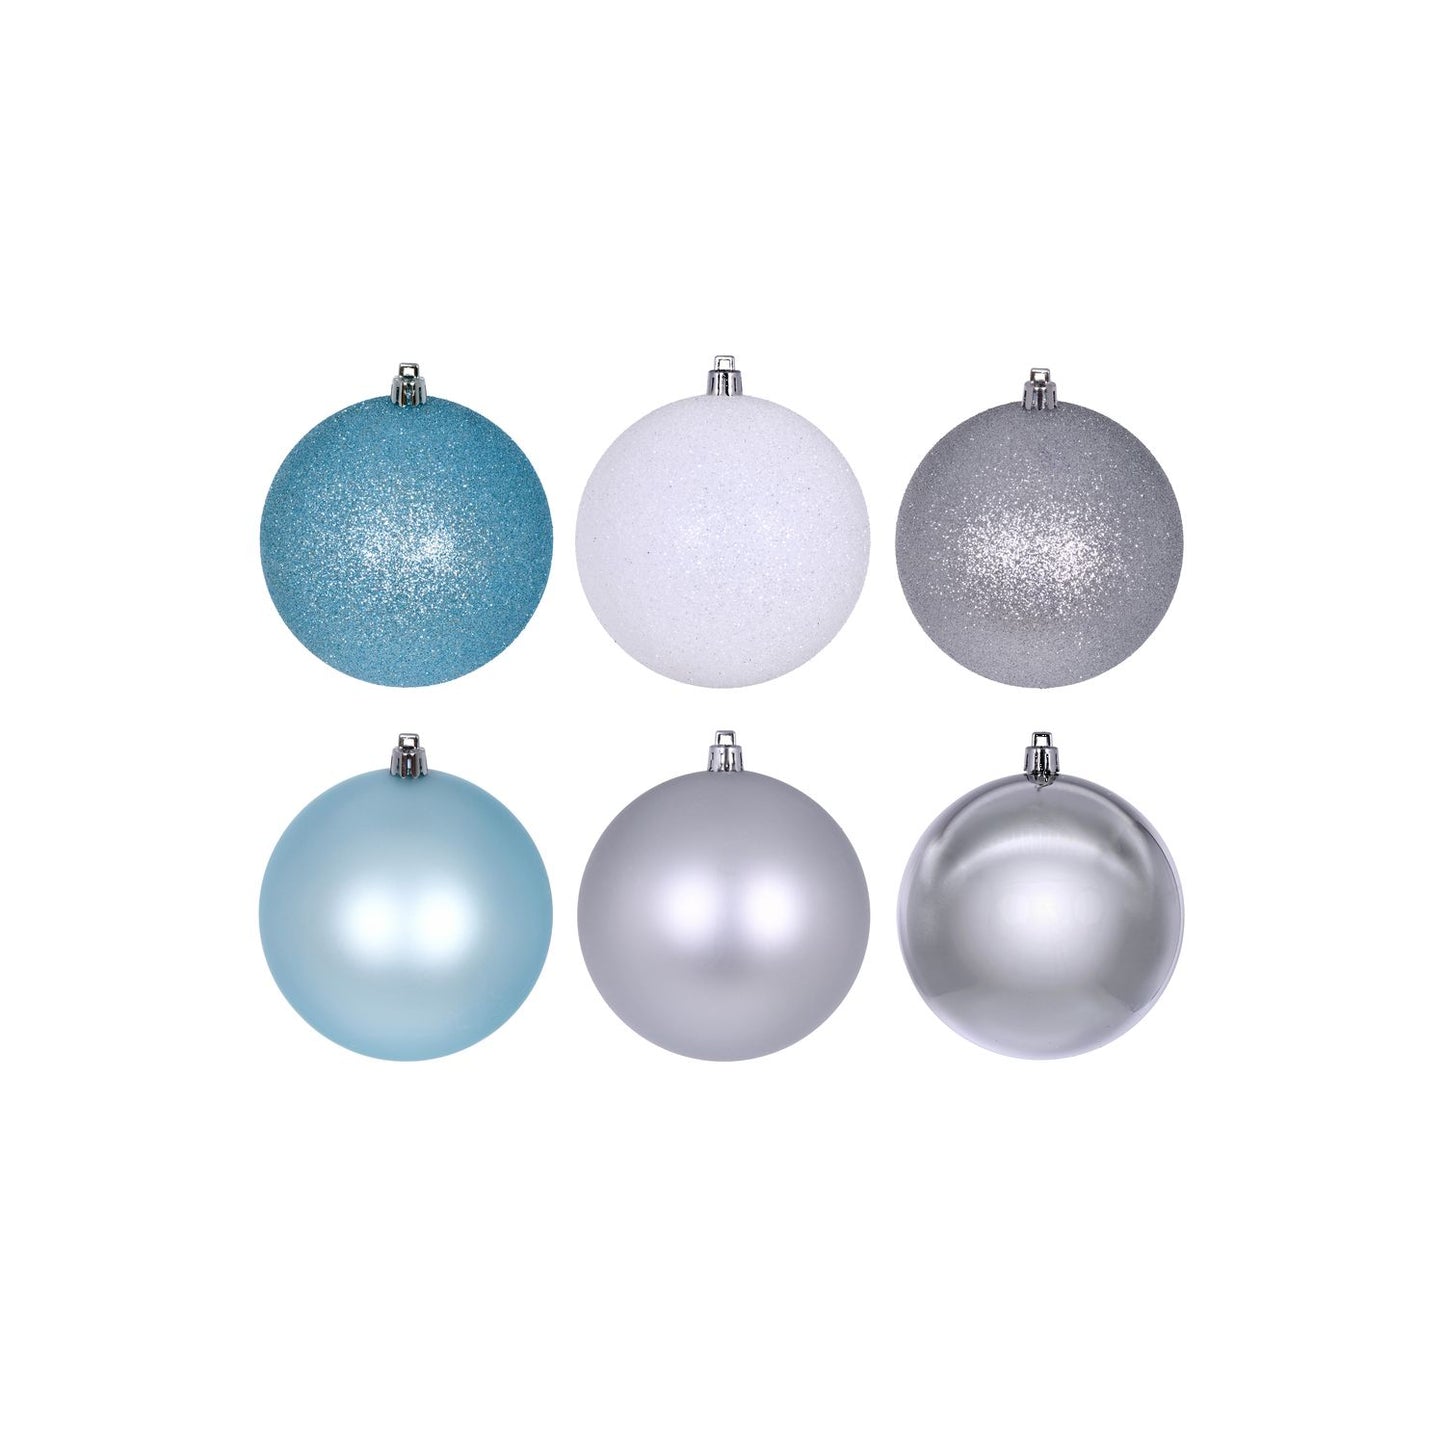 Vickerman 3" Silver, Baby Blue, And White Ornament Assortment, 12 Per Box